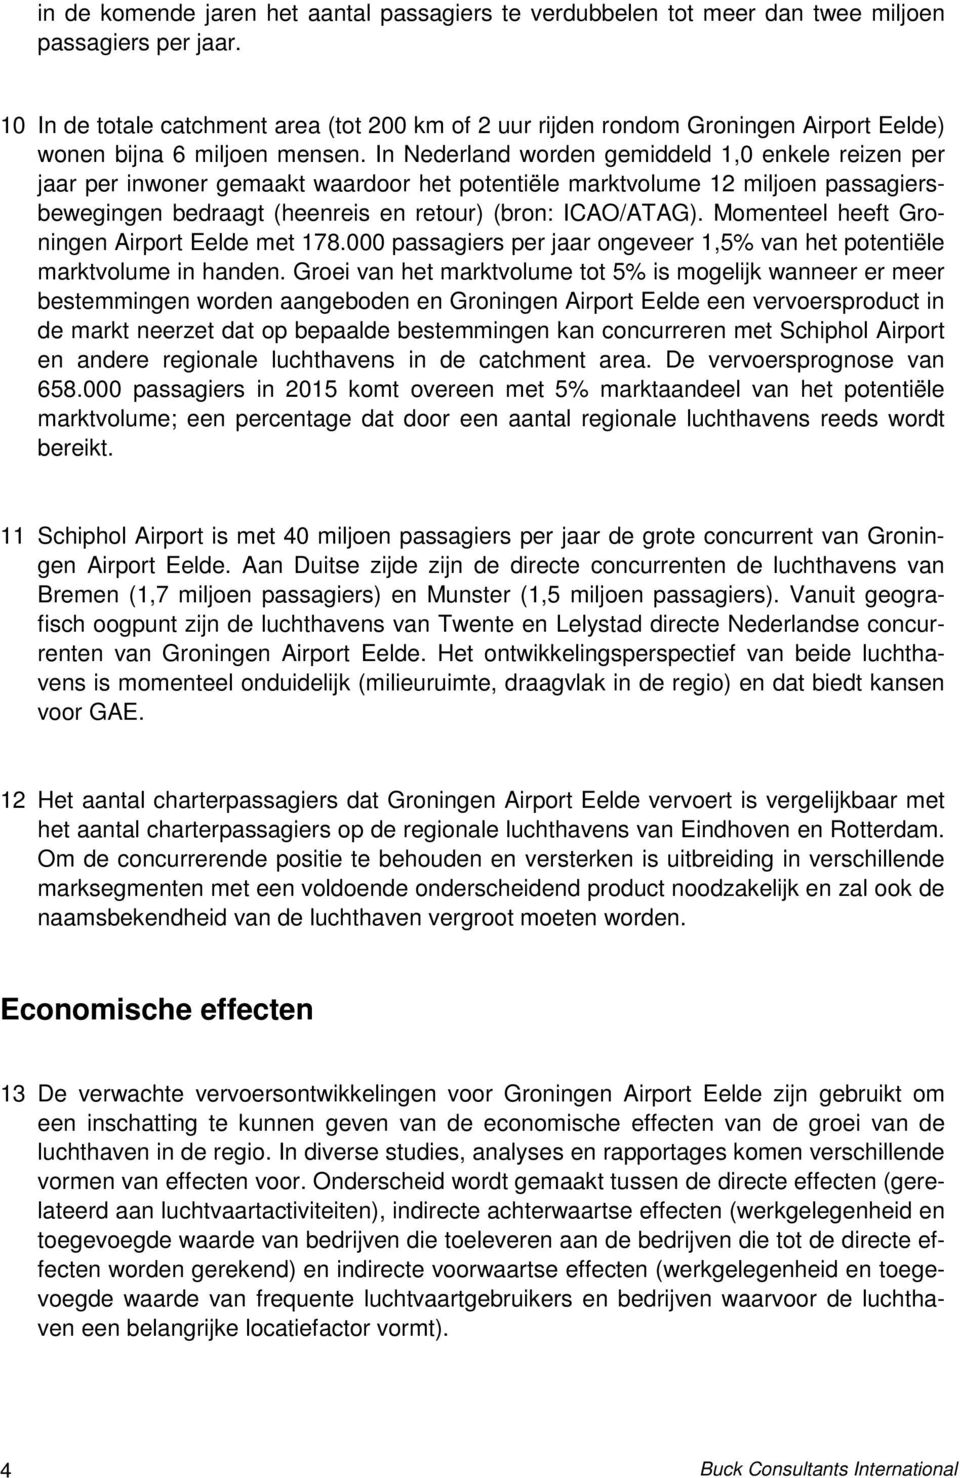 In Nederland worden gemiddeld 1,0 enkele reizen per jaar per inwoner gemaakt waardoor het potentiële marktvolume 12 miljoen passagiersbewegingen bedraagt (heenreis en retour) (bron: ICAO/ATAG).